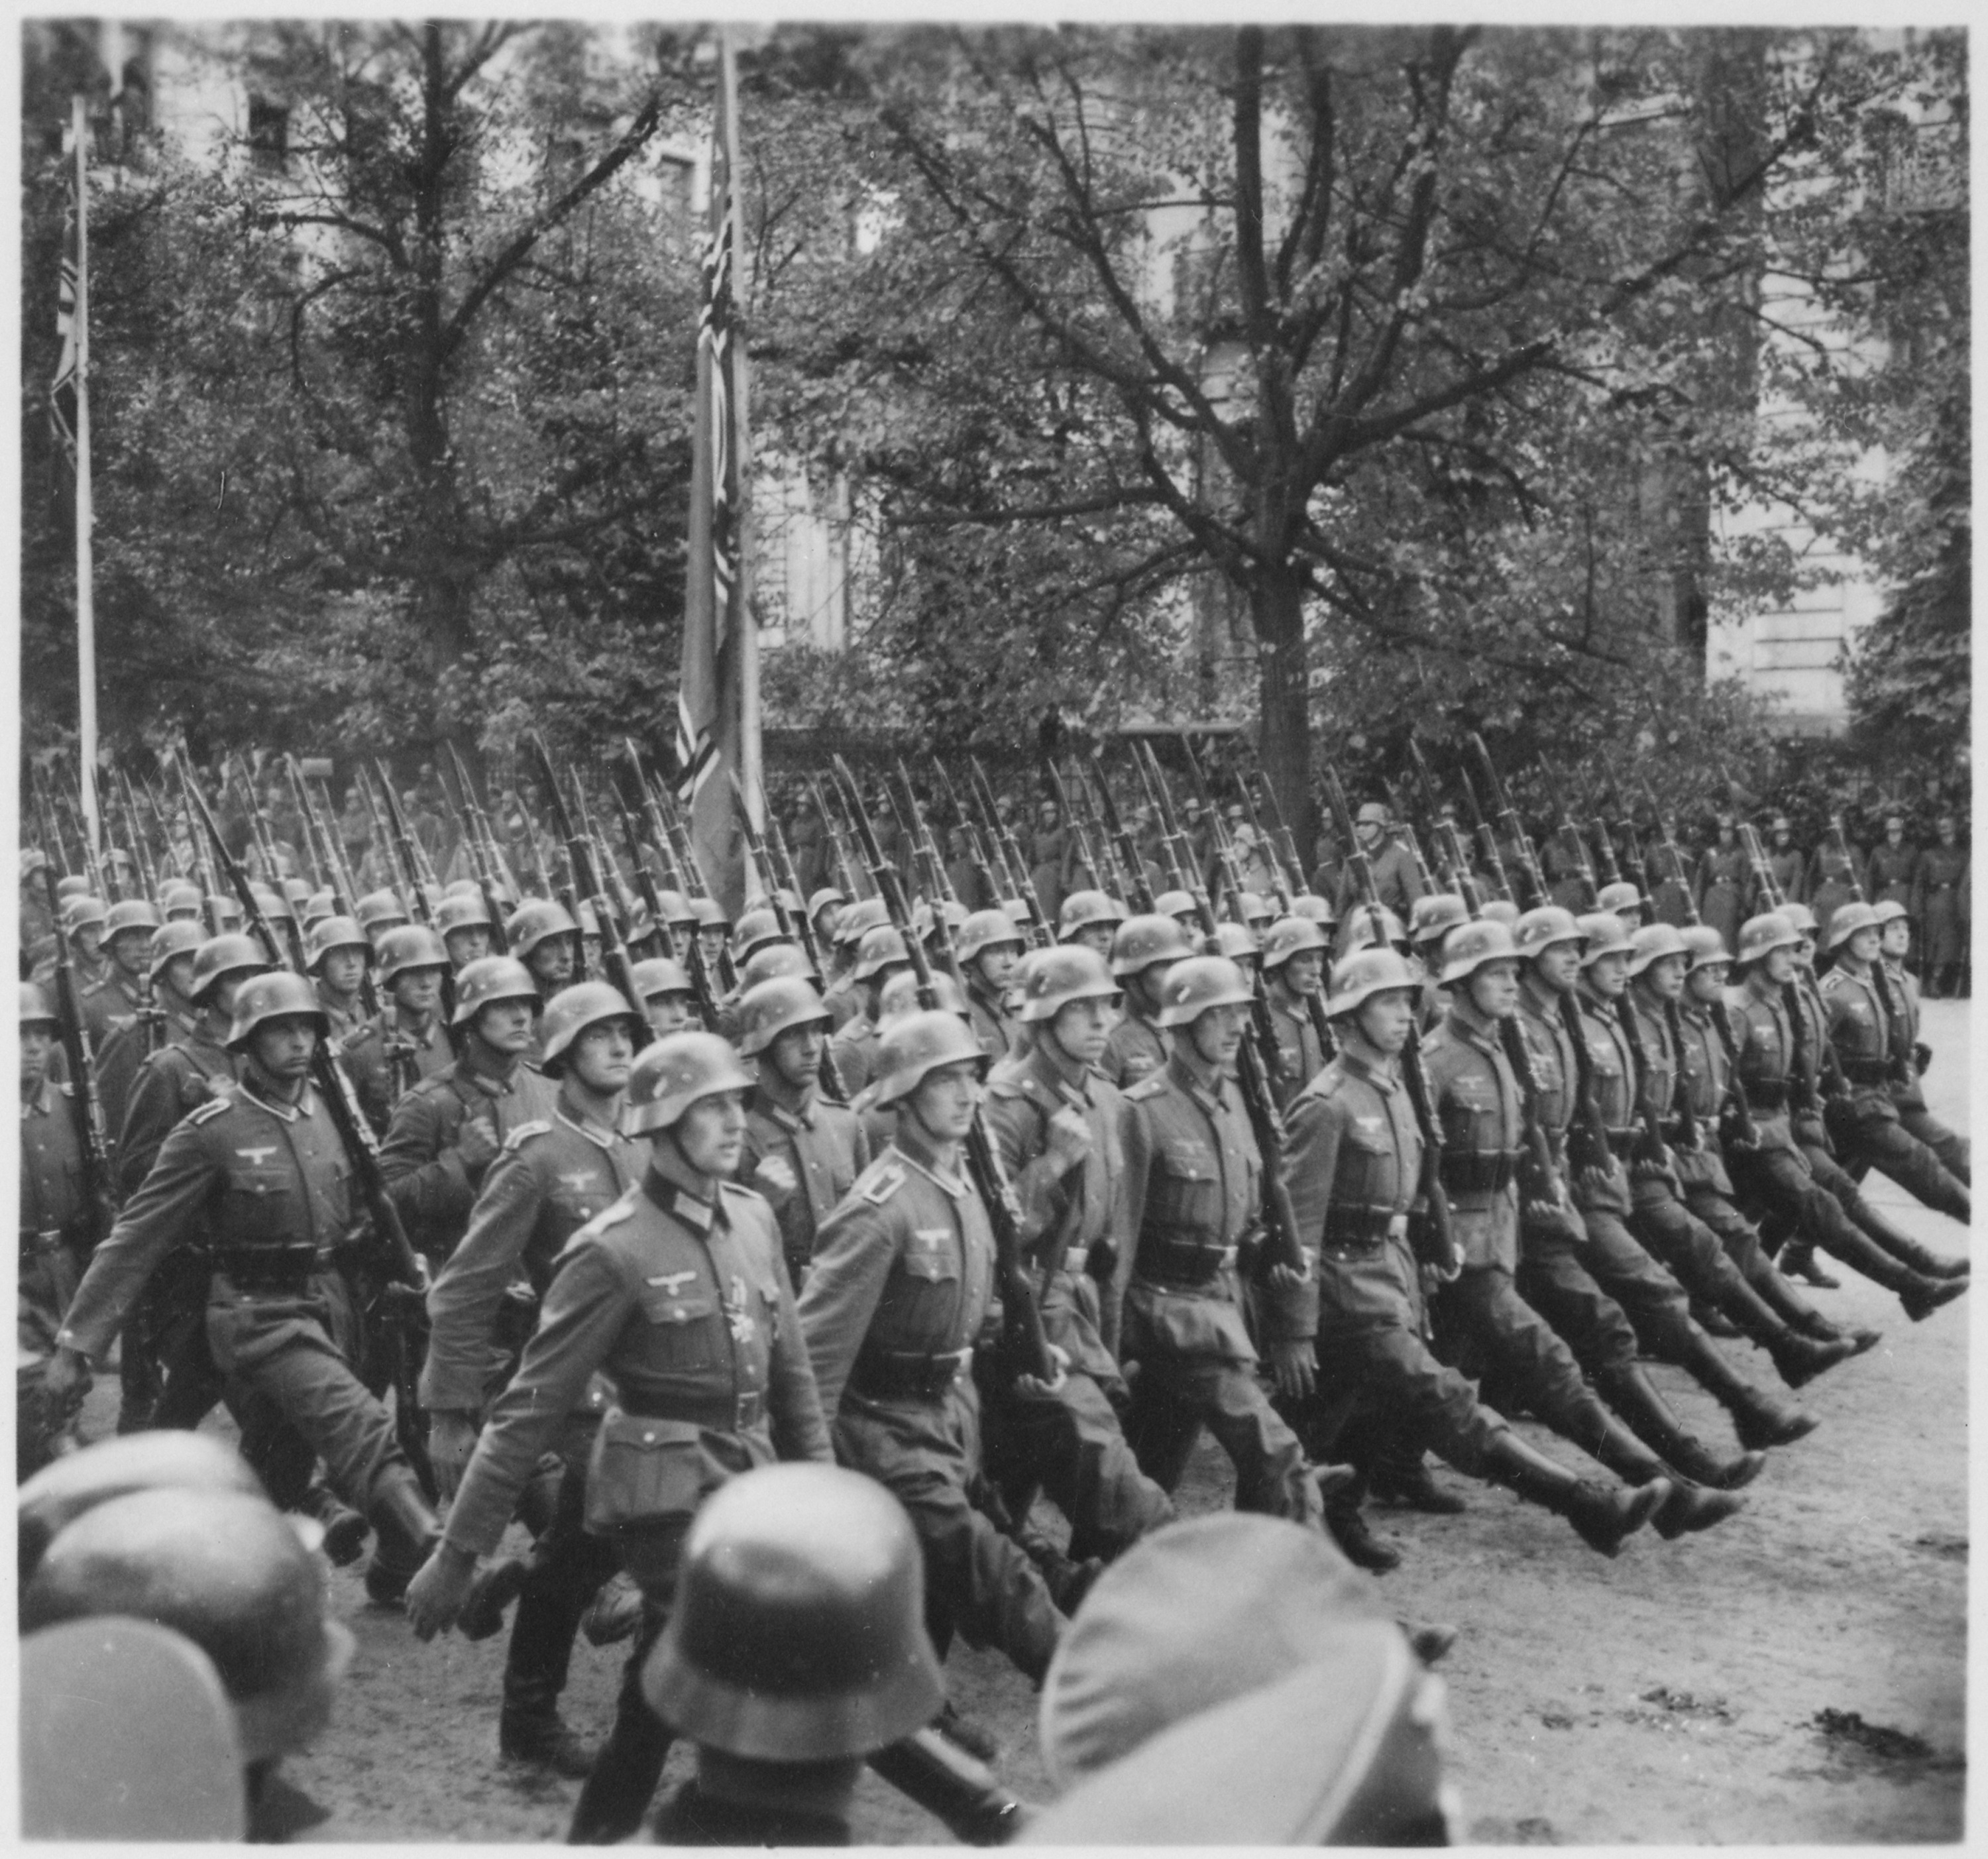 German_troops_parade_through_Warsaw,_Poland,_09-1939_-_NARA_-_559369[1].jpg